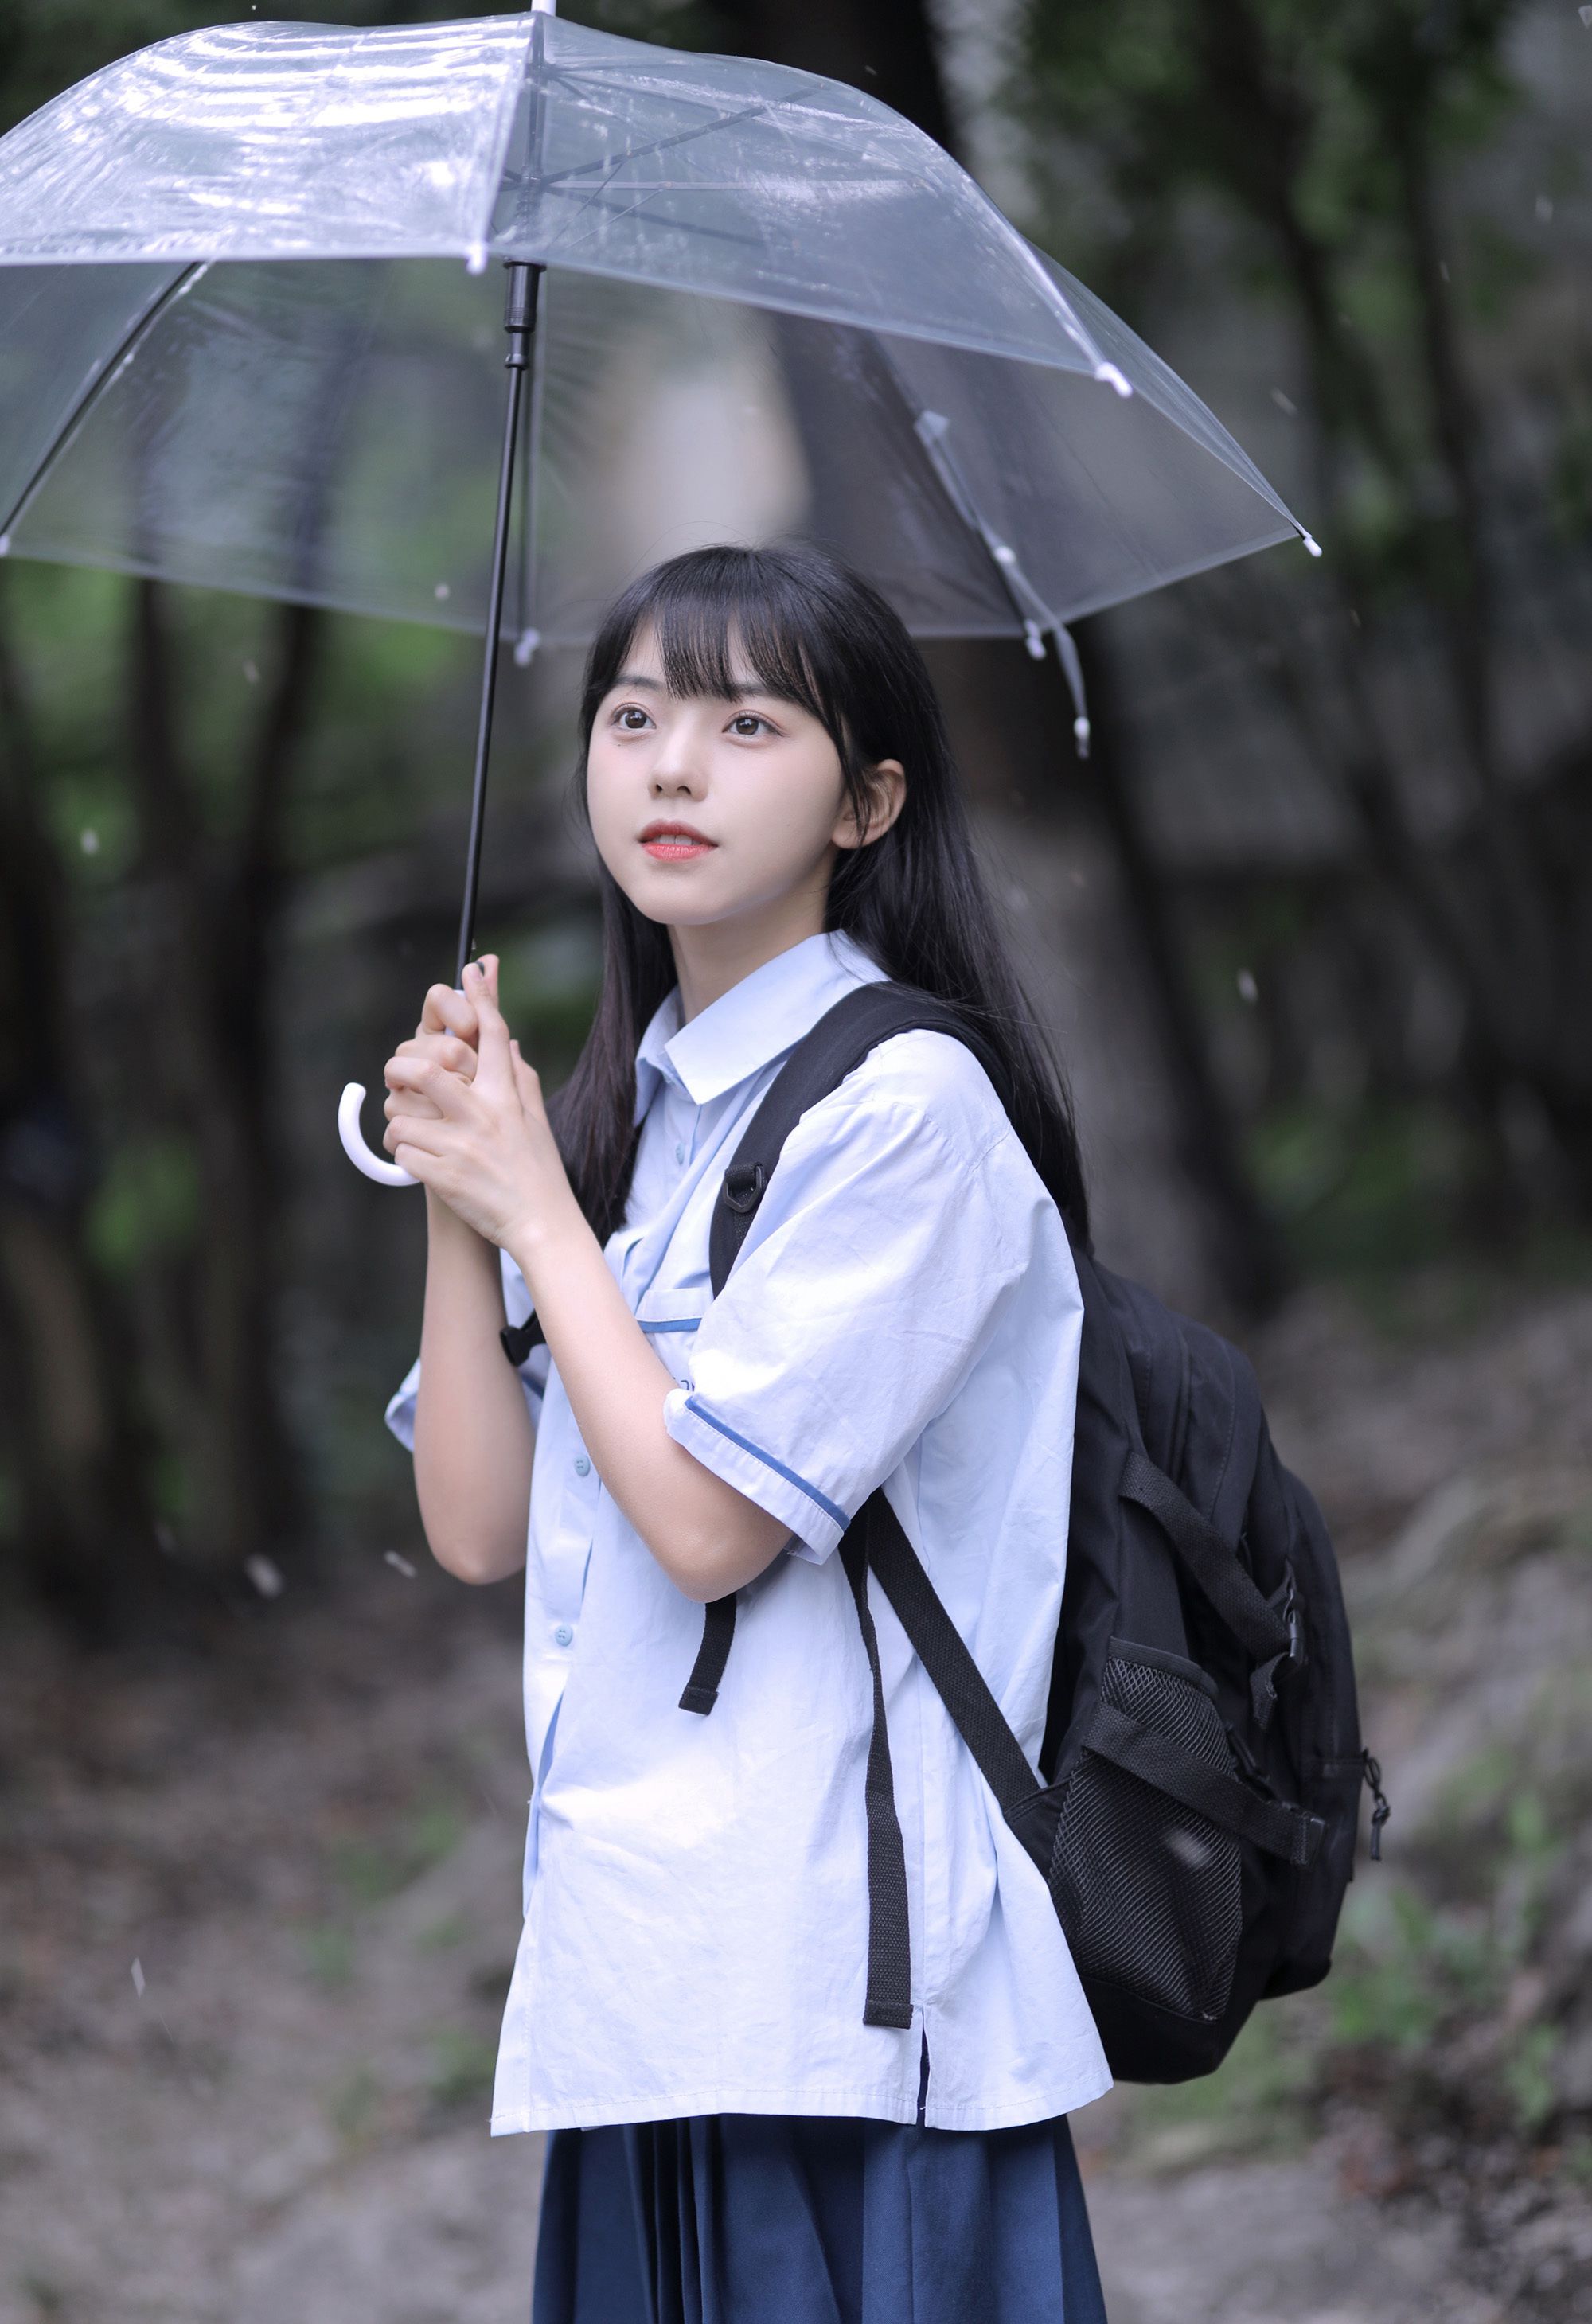 可爱清纯齐刘海黑直长发美少女学生妹子手拿雨伞甜美街拍写真大图图片